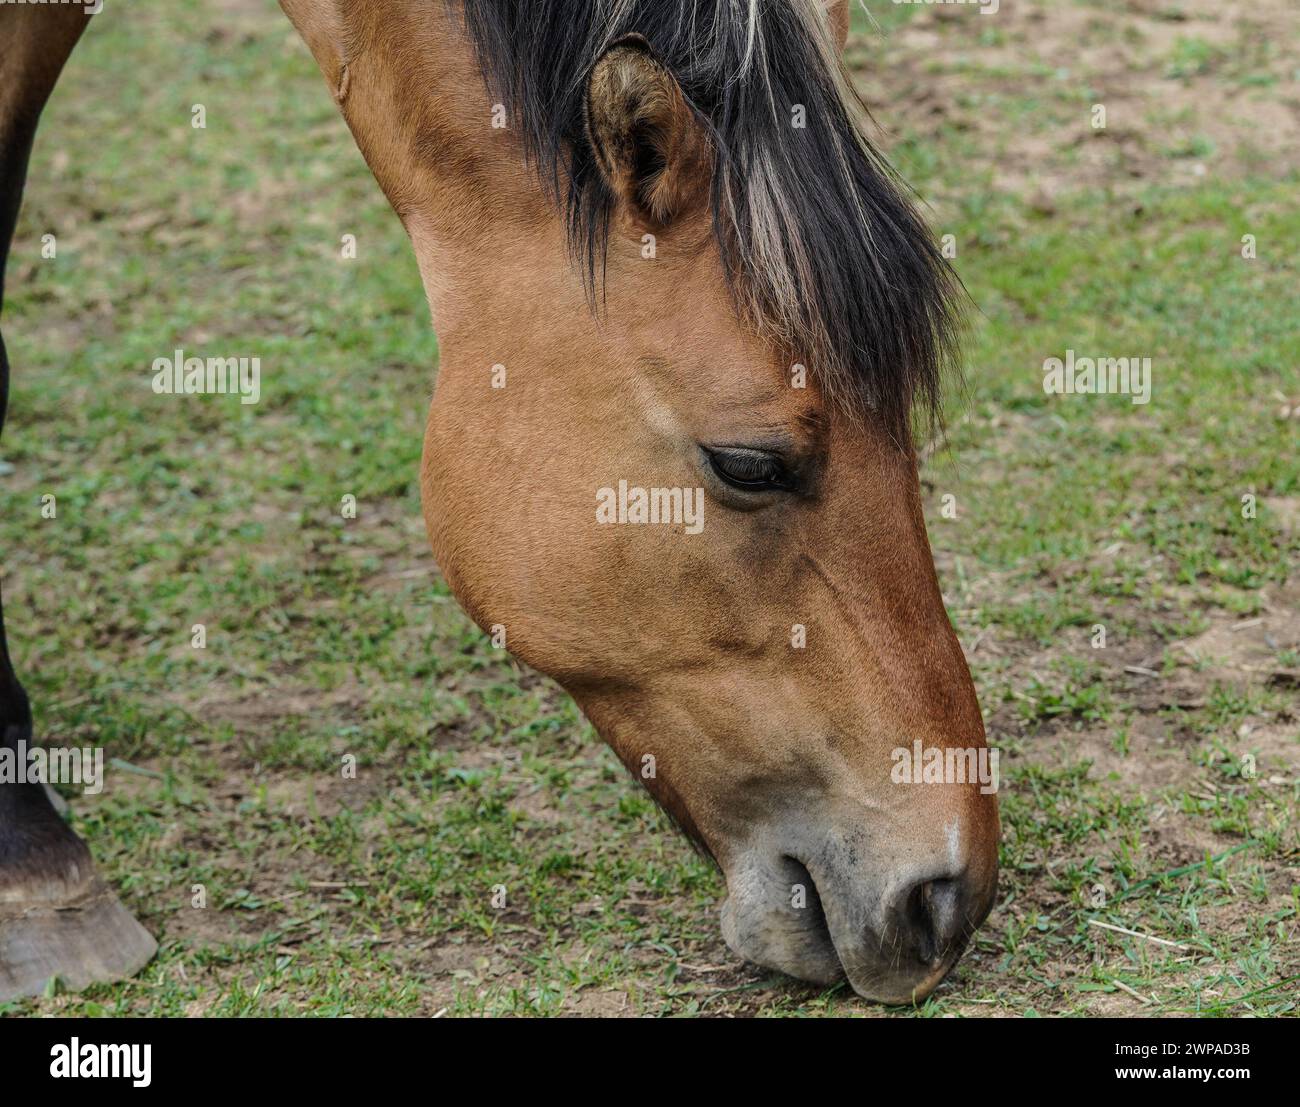 Il cavallo Ojibwe in pericolo di estinzione o il pony indiano Lac la Croix. Immagine del volto, creata con una fotocamera mirrorless. Foto Stock